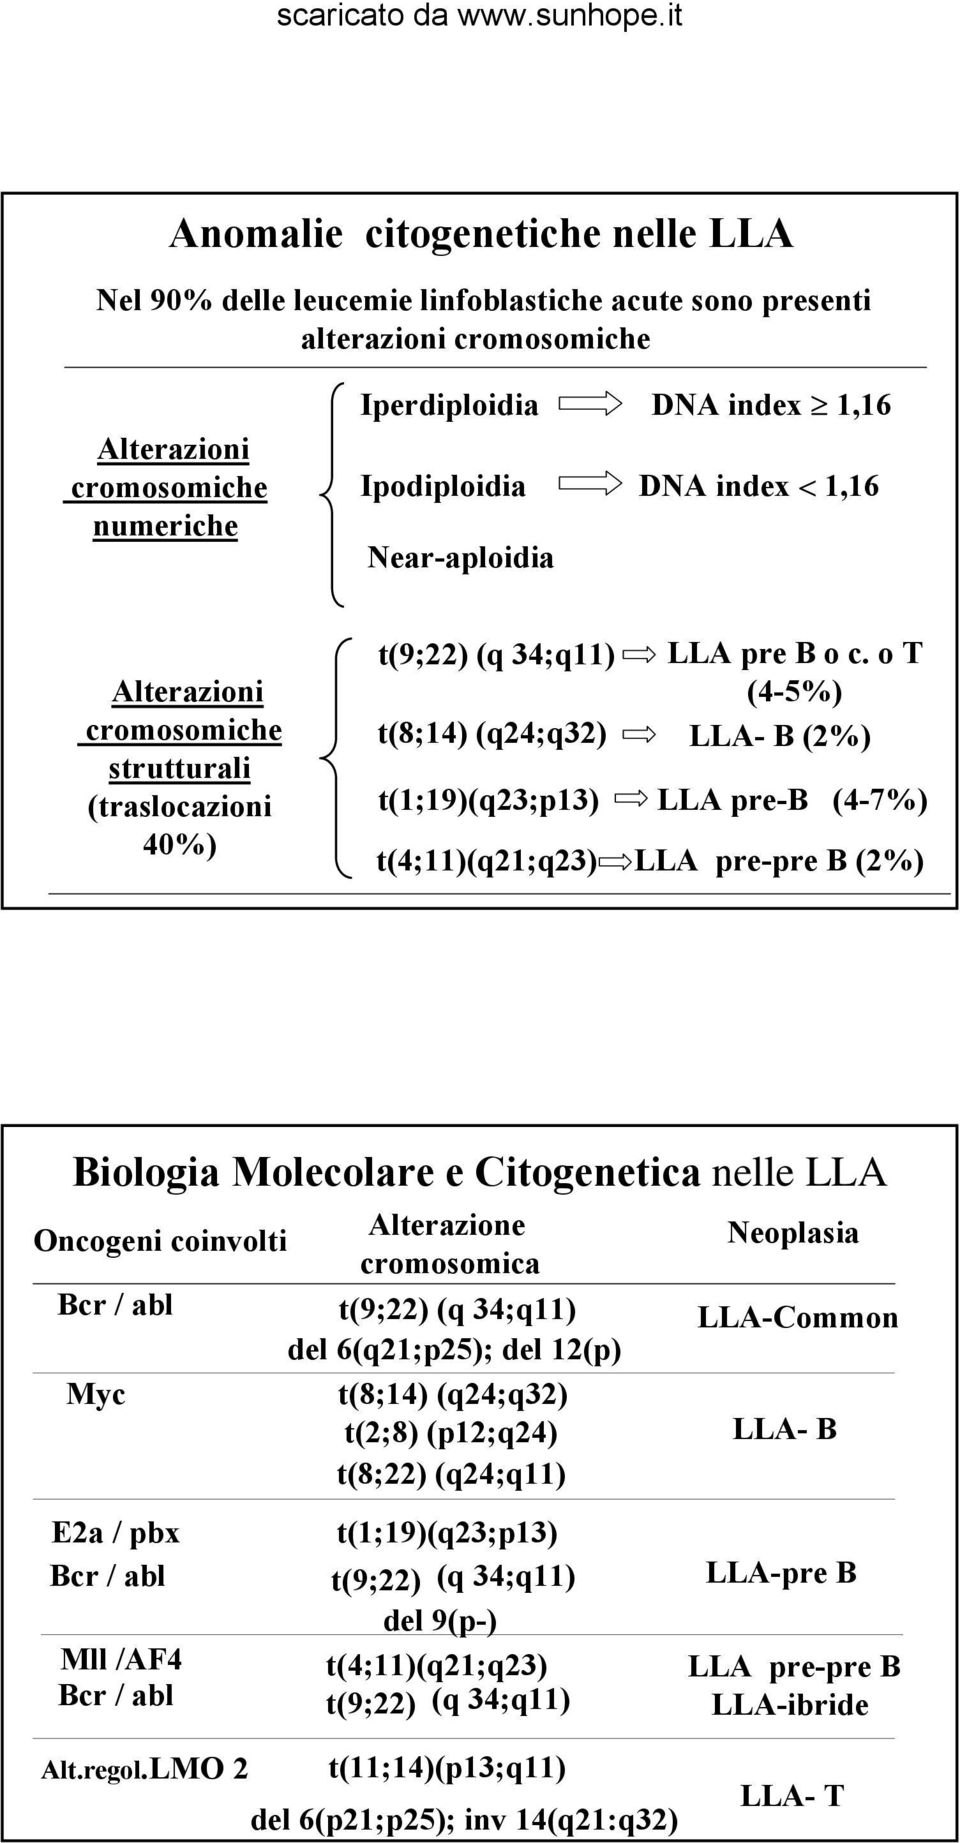 o T (4-5%) LLA- B (2%) LLA pre-b (4-7%) LLA pre-pre B (2%) Biologia Molecolare e Citogenetica nelle LLA Oncogeni coinvolti Bcr / abl Myc E2a / pbx Bcr / abl Mll /AF4 Bcr / abl Alterazione cromosomica